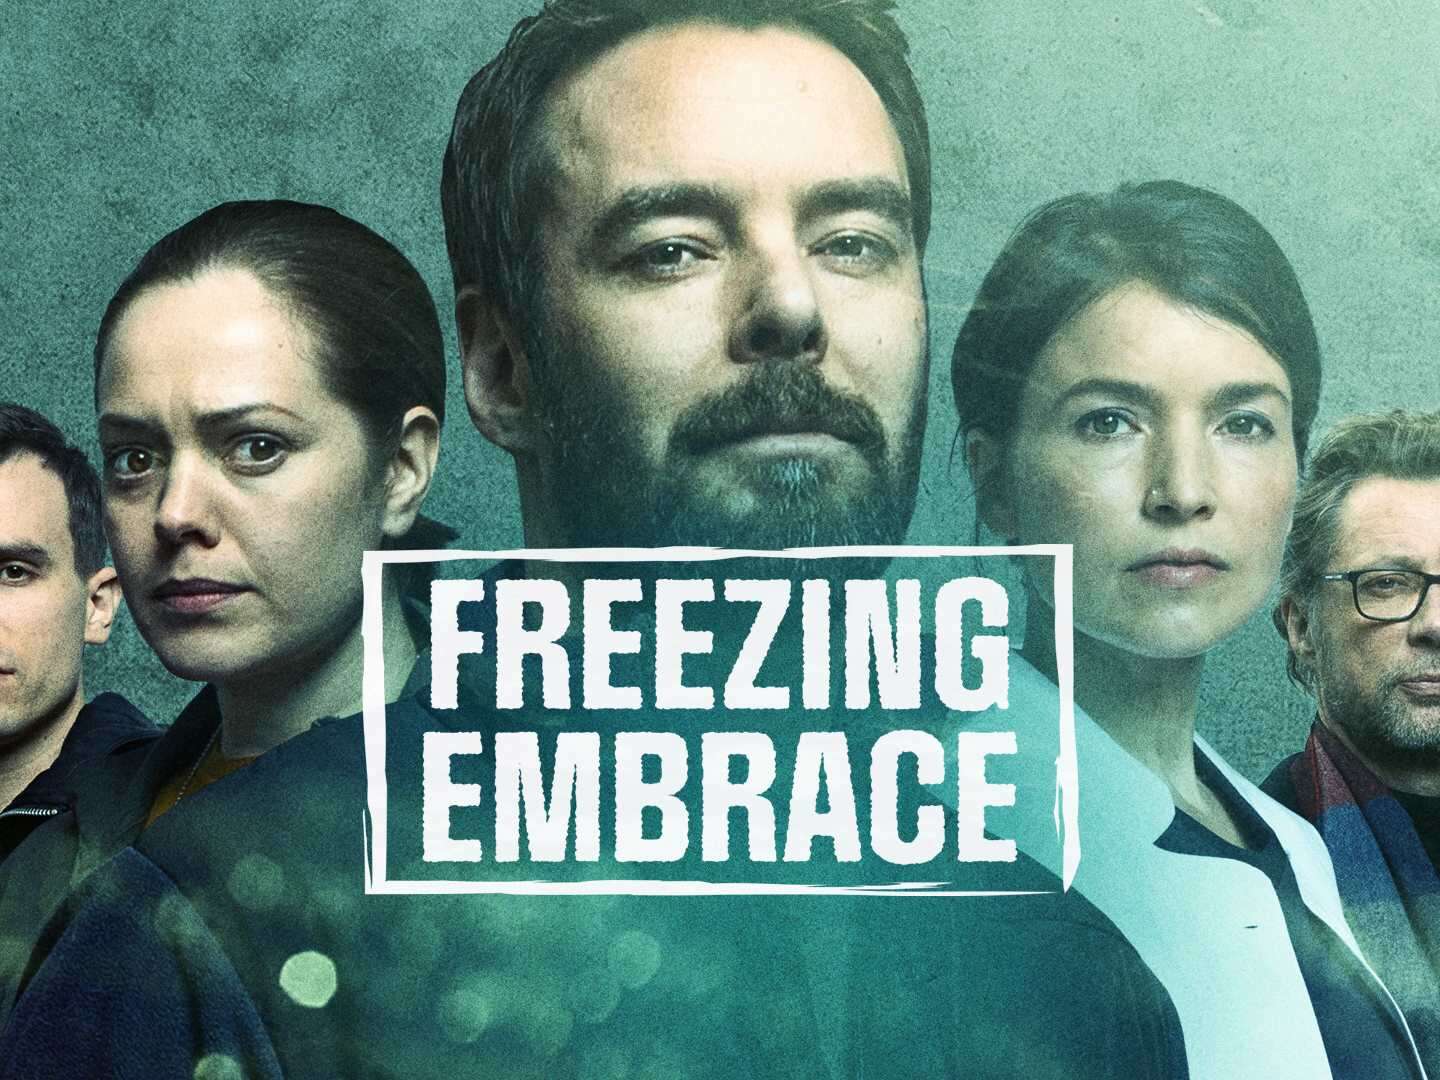 Freezing Embrace FREEZE C 00000T r6745 1920x1080